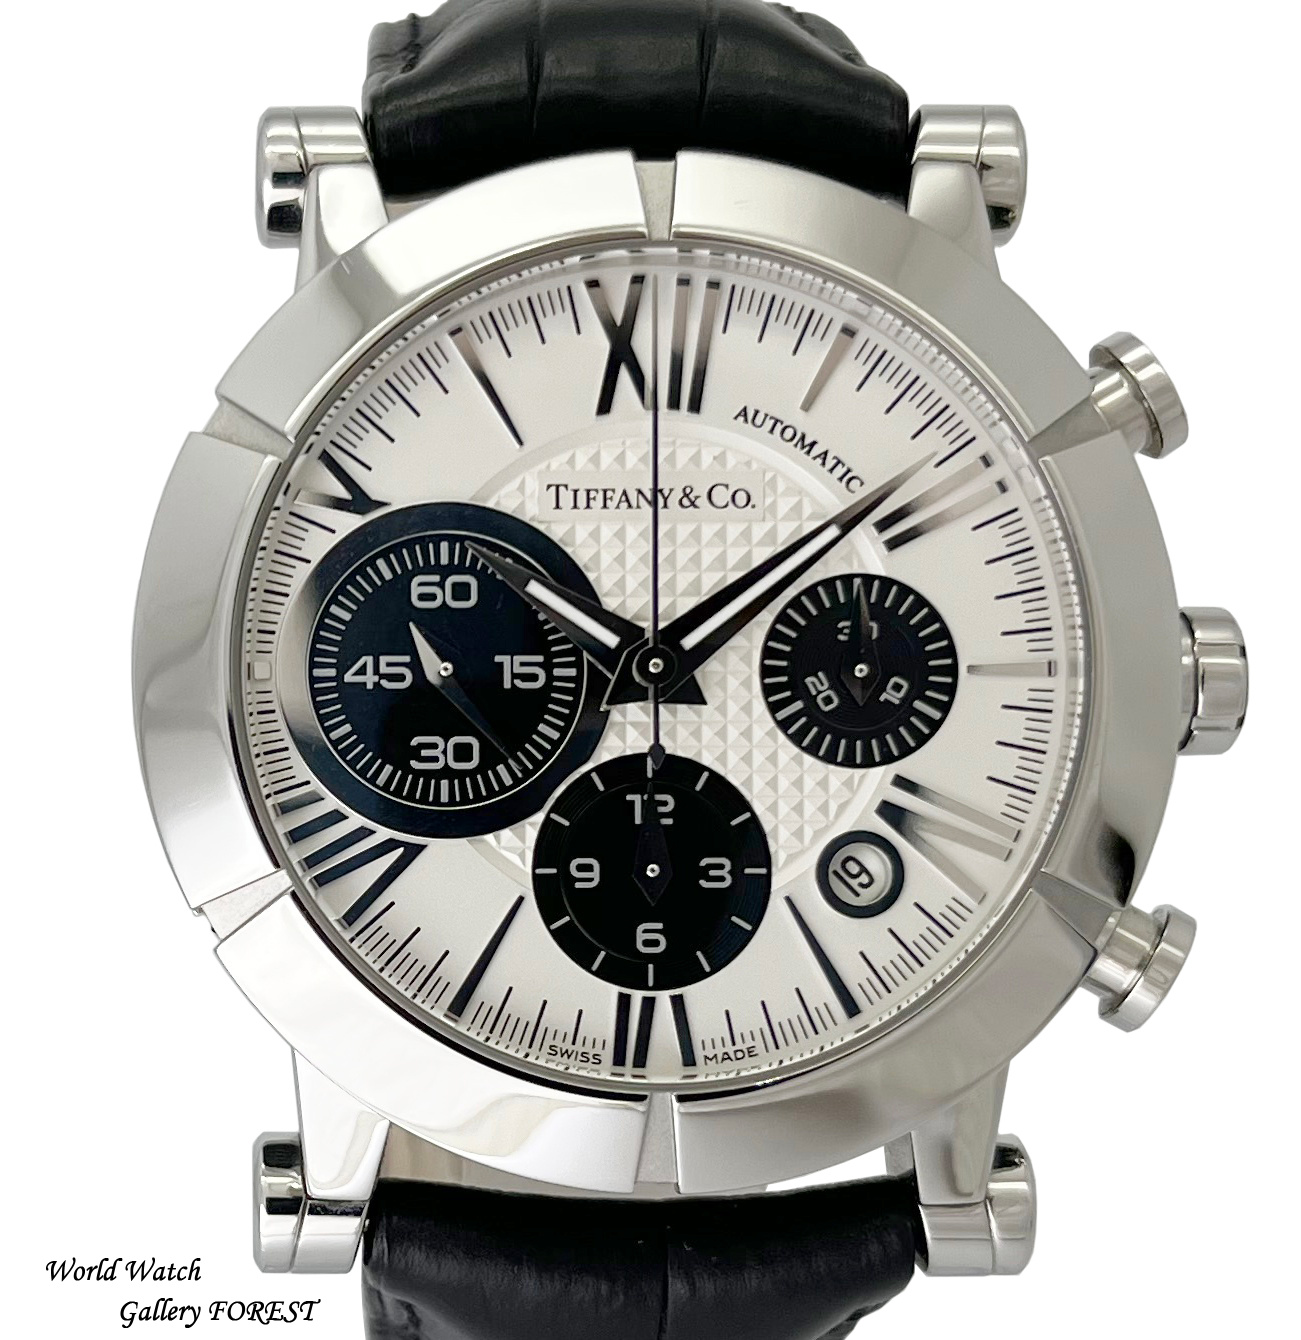 ティファニー アトラス ジェント クロノグラフ 中古 メンズ腕時計 Z1000.82.12A21A71A 自動巻き 白